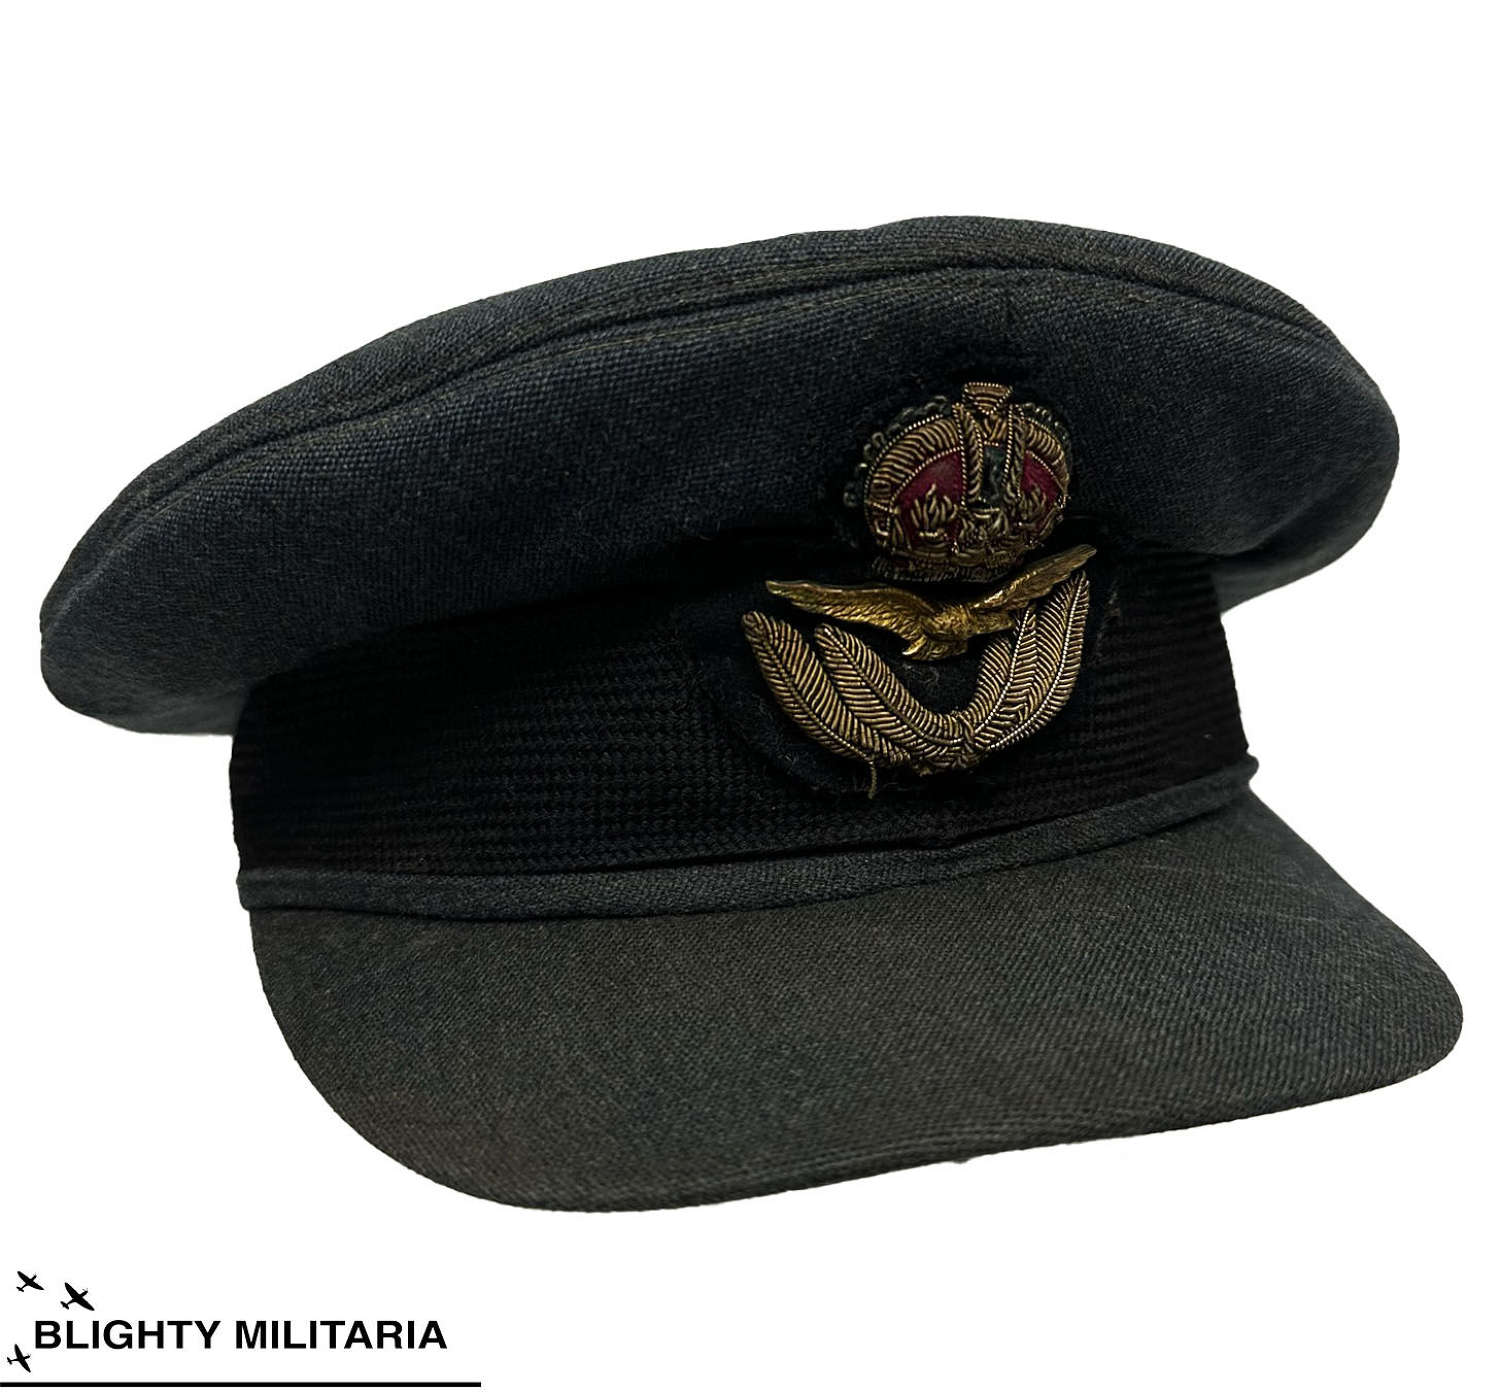 Original WW2 RAF Officer's Peaked Cap by 'Austin Reed'